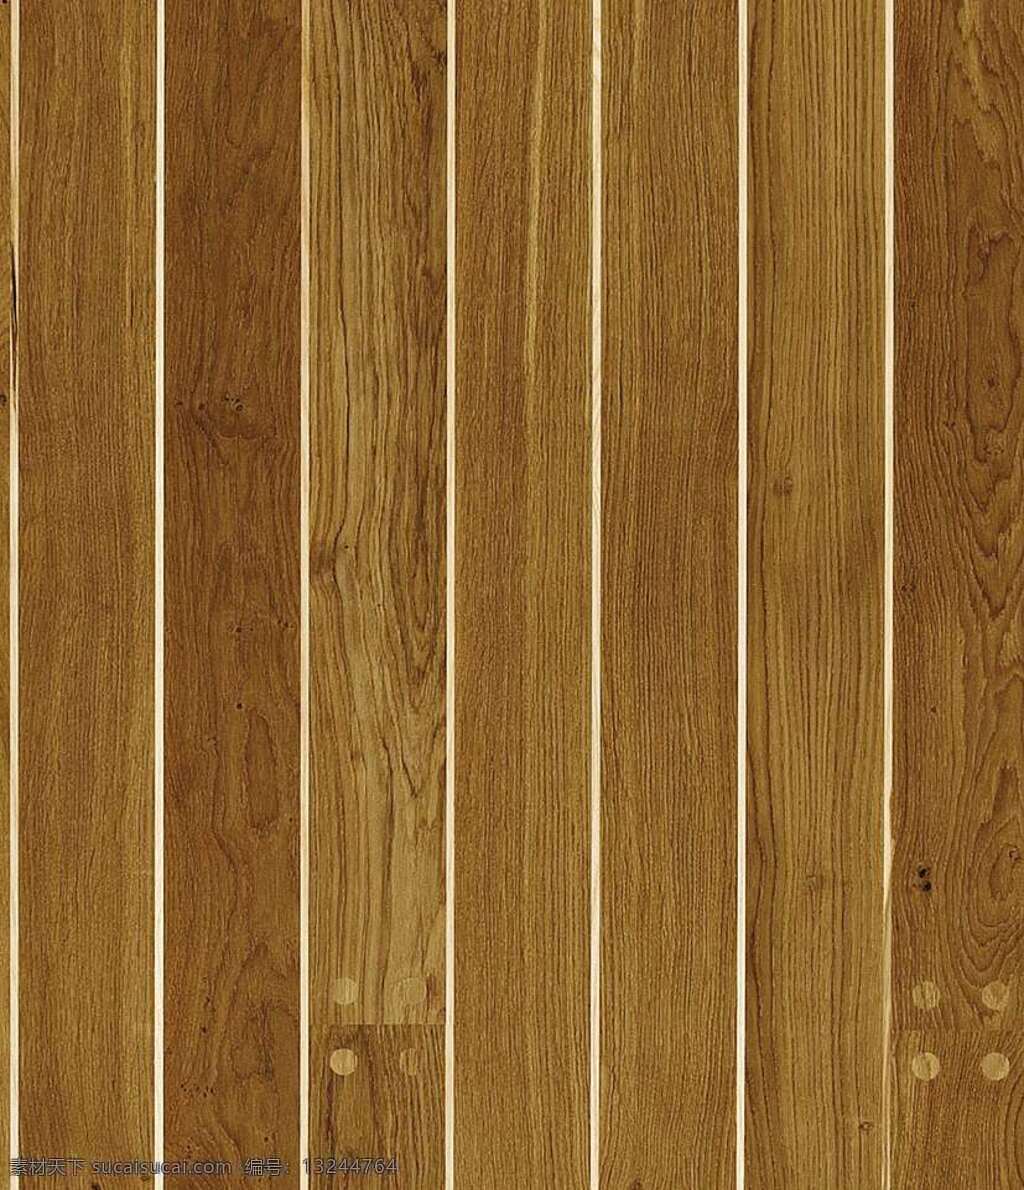 木地板 贴图 地板 设计素材 地板贴图 木地板贴图 木地板效果图 装修效果图 木地板材质 装饰素材 室内装饰用图